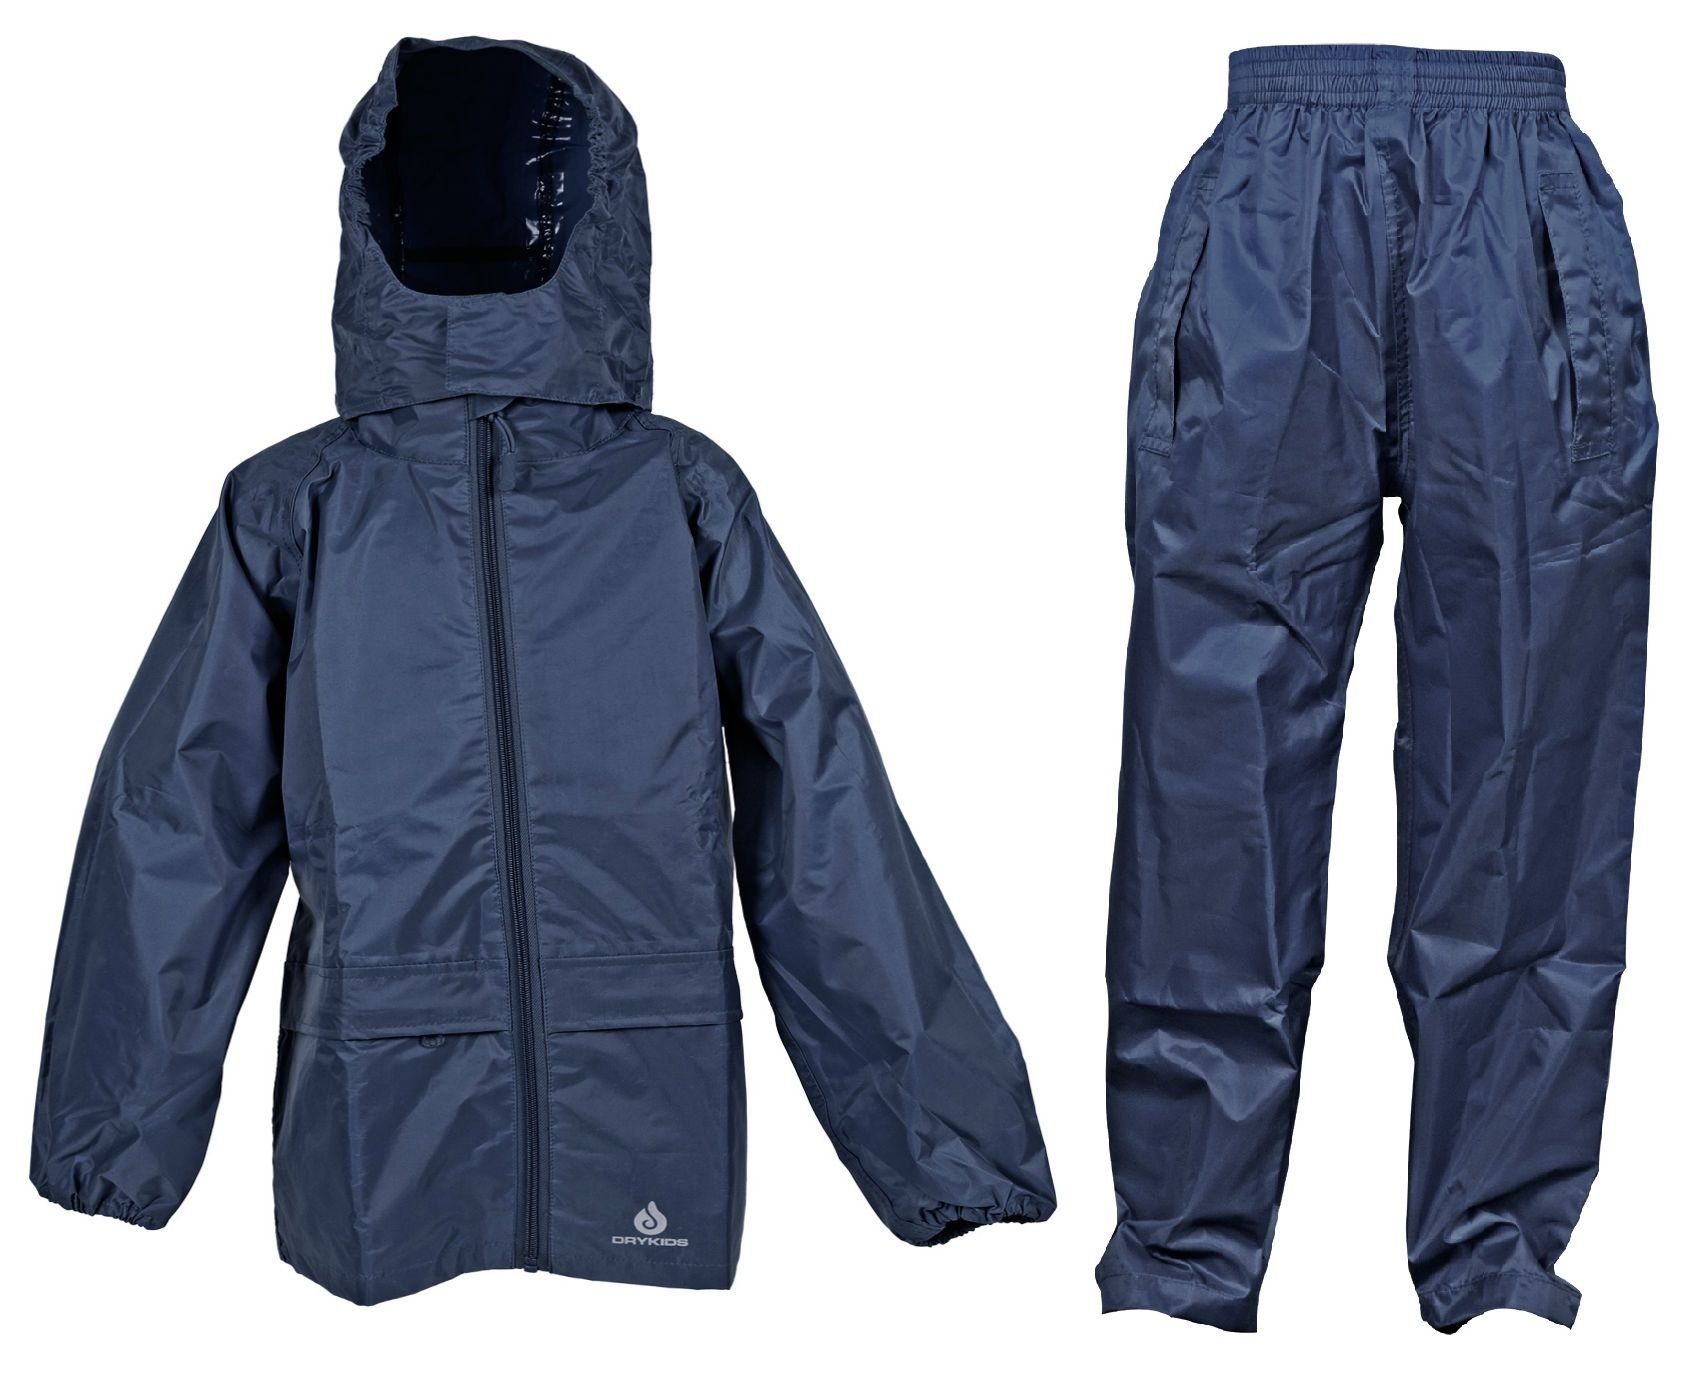 DRY KIDS Regenanzug (1-tlg), Wasserdichtes reflektierende Kinder Regenbekleidung Regenanzug-Set, Blau